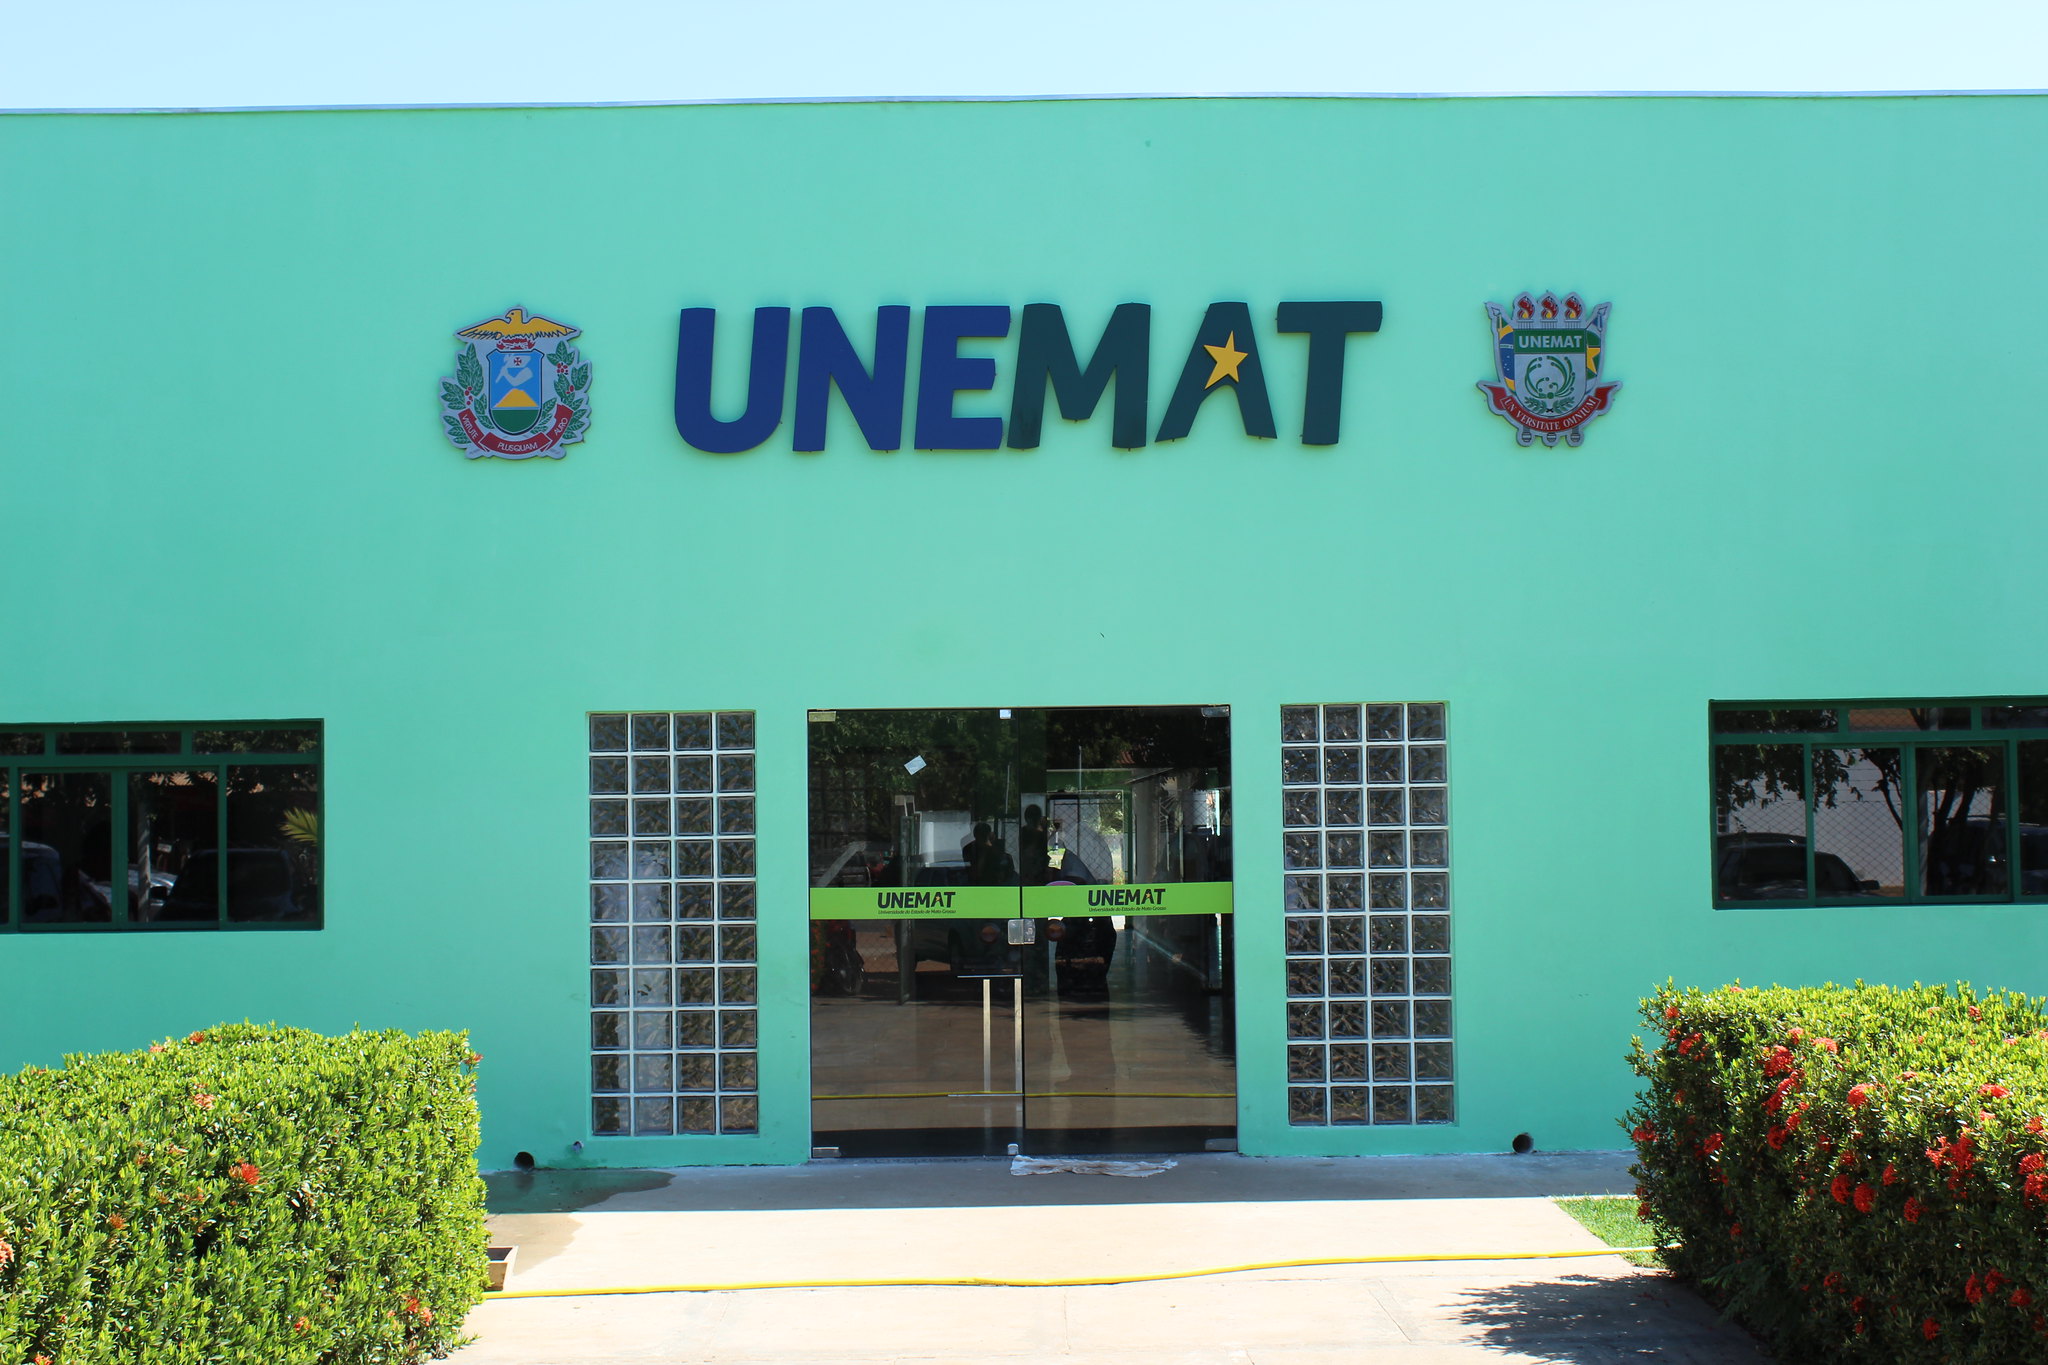 UNEMAT Notícias -Professor da Unemat lança jogo educativo em Feira  Internacional